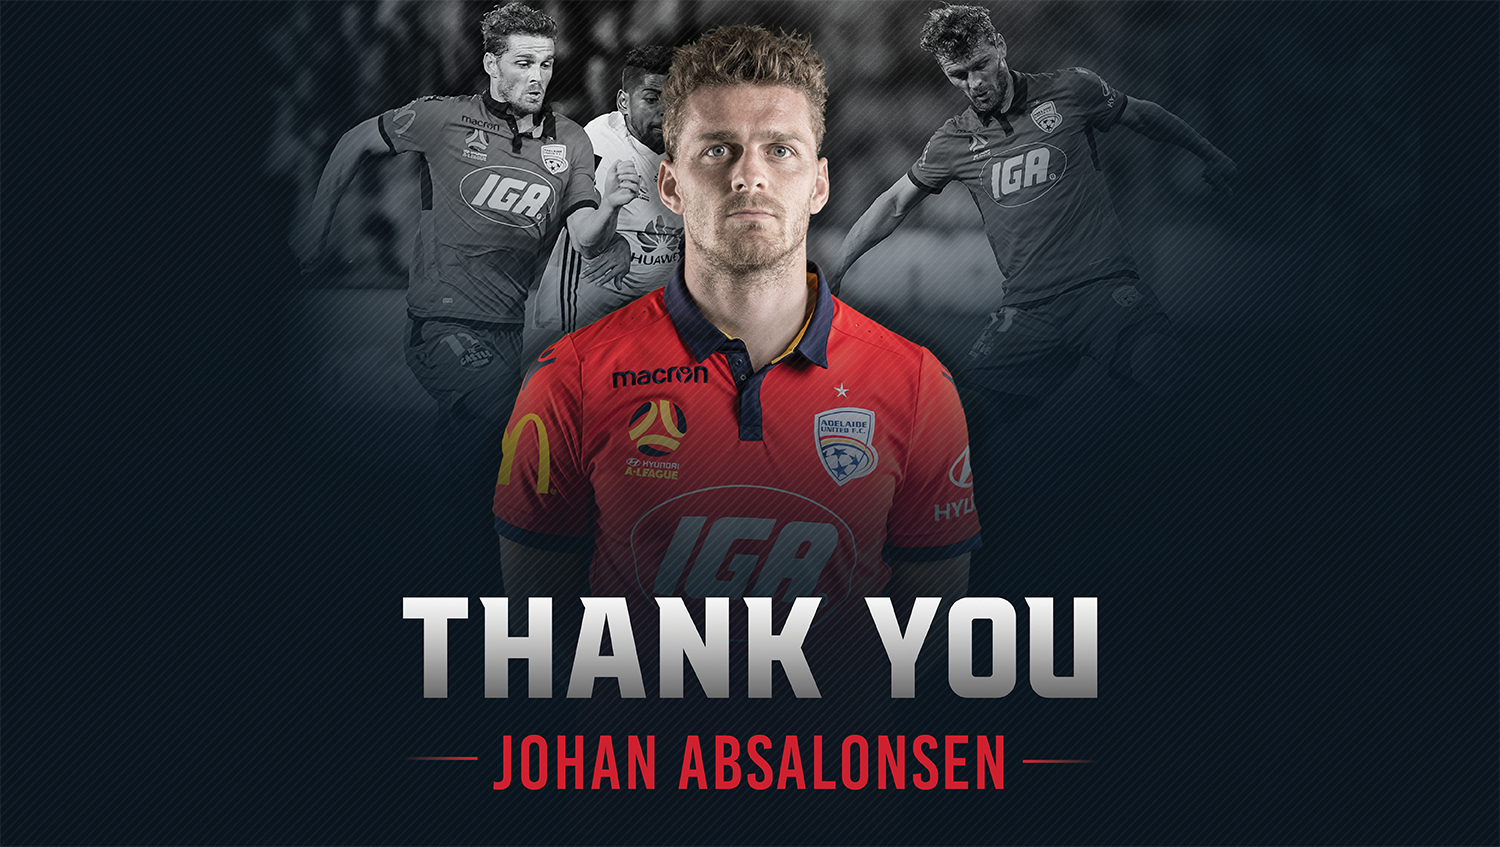 Johan Absalonsen is leaving Adelaide United to return to Denmark